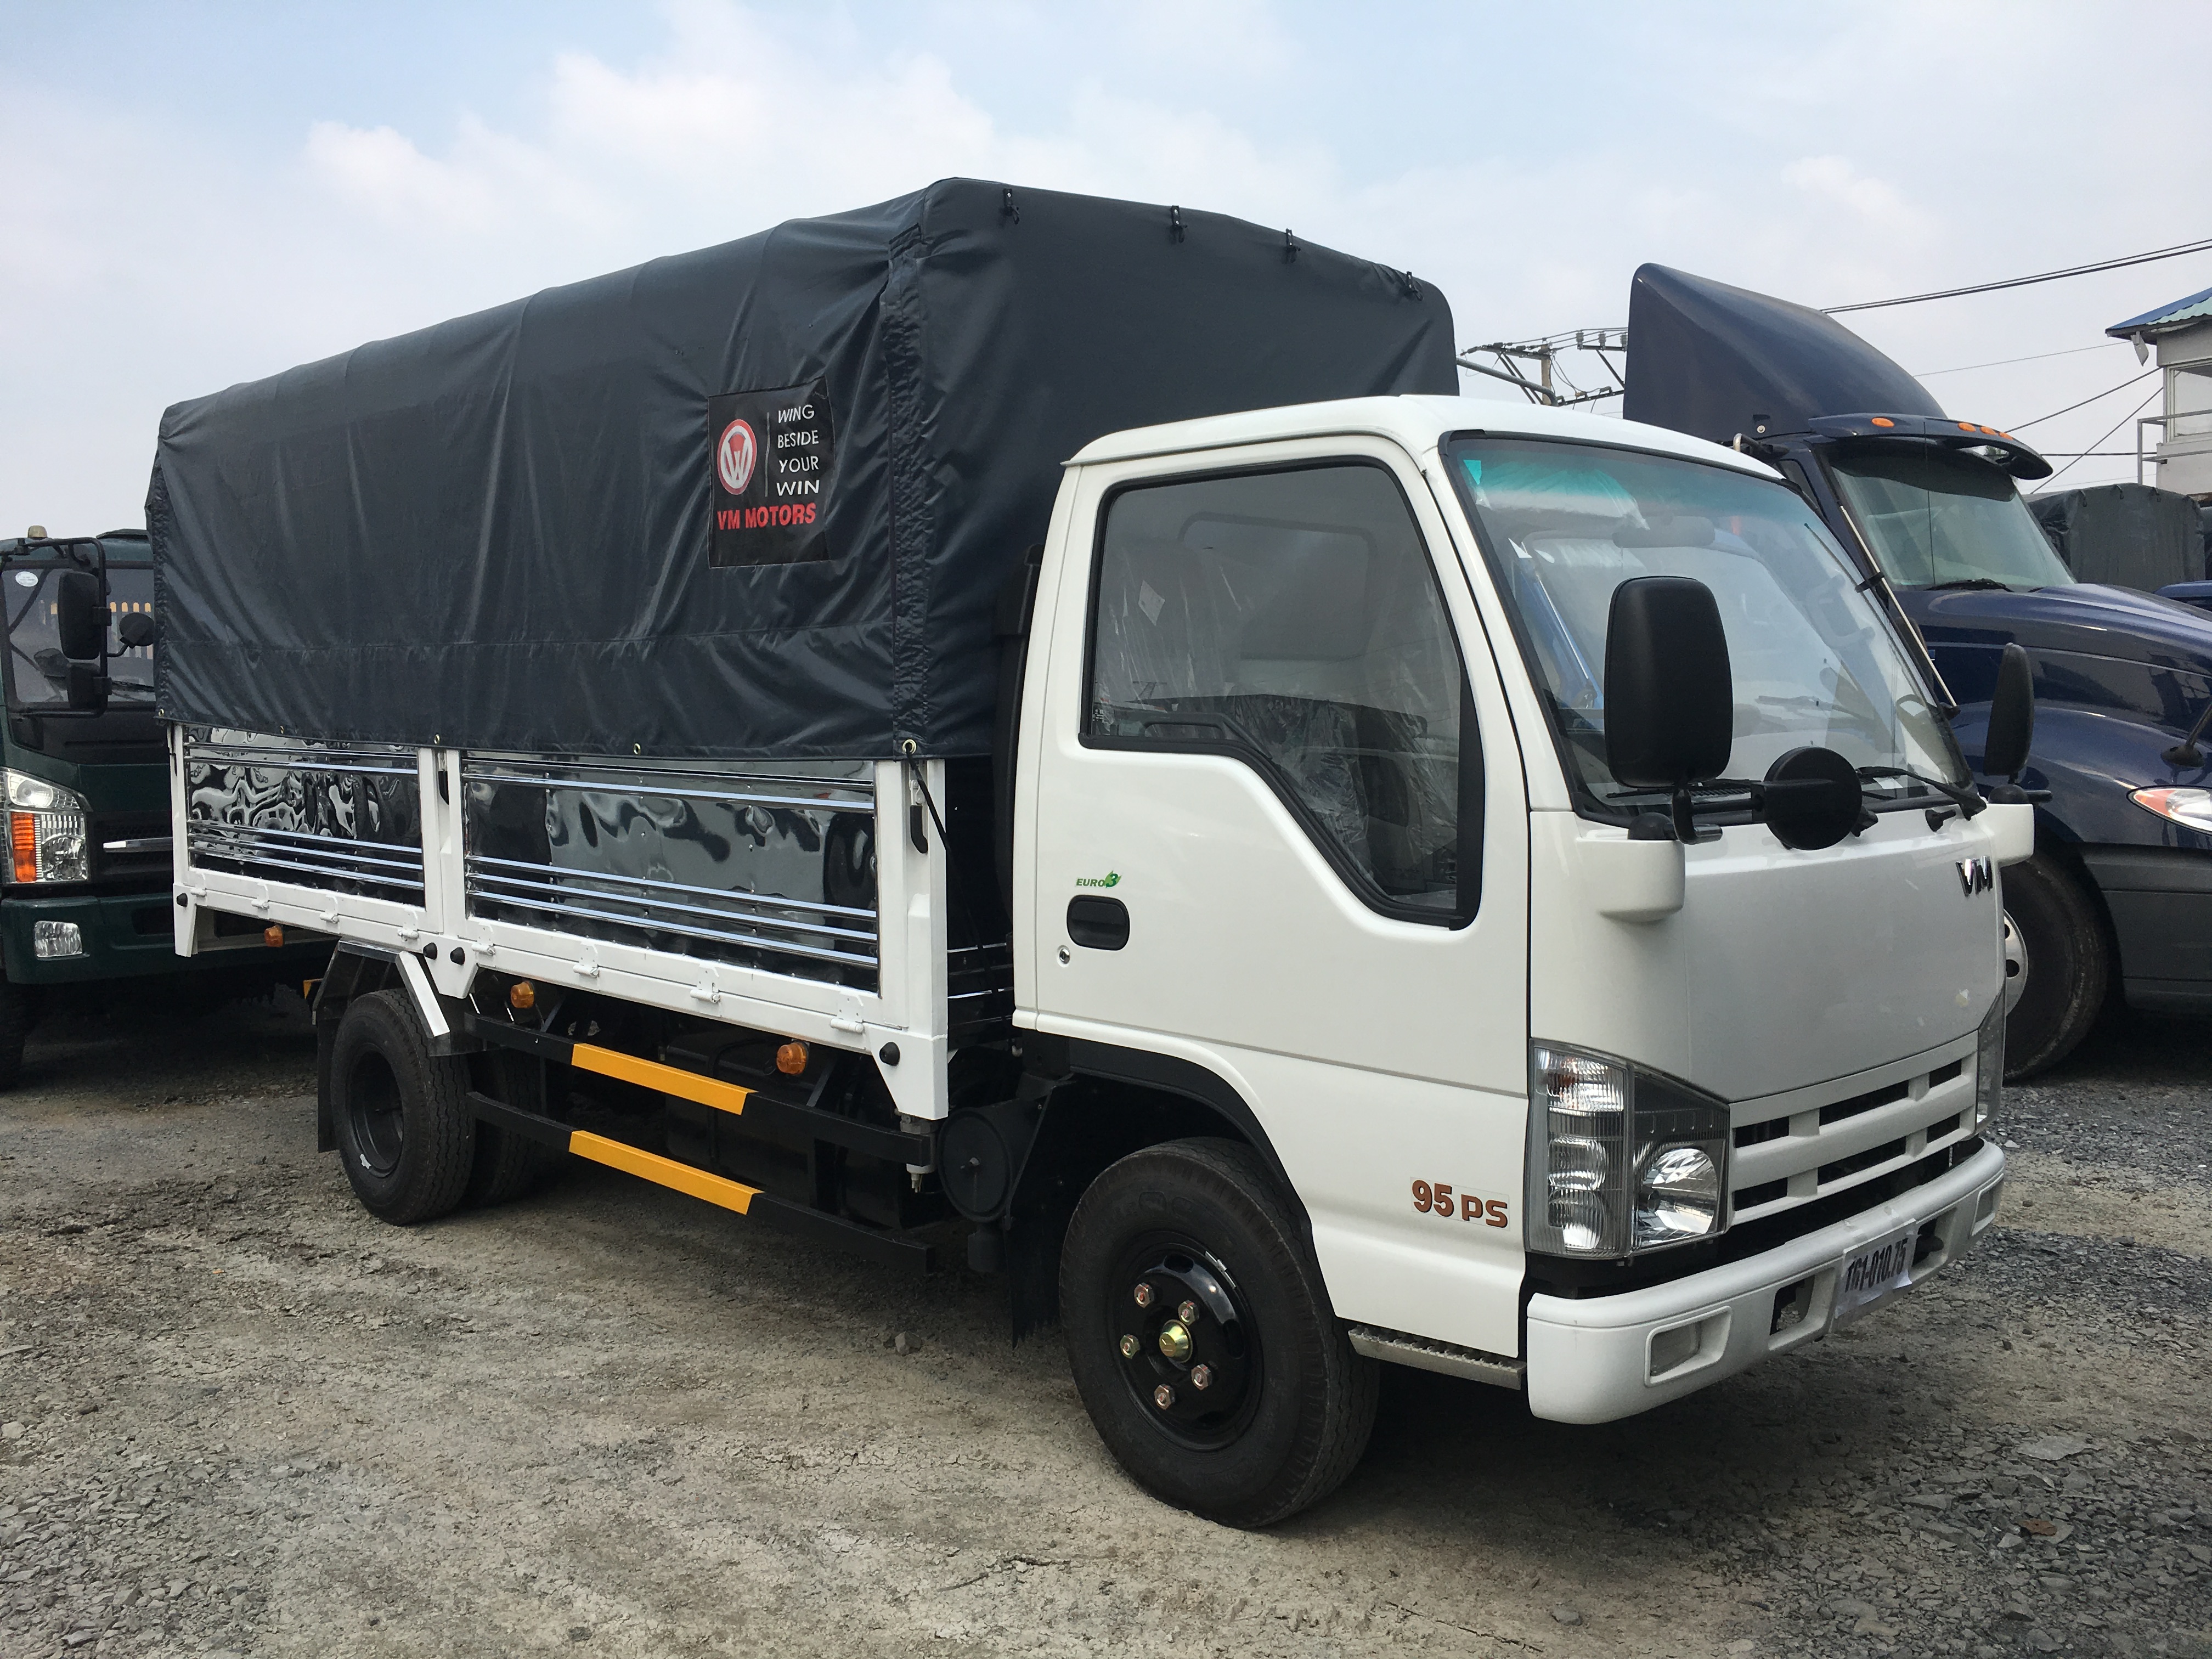 Xe tải Isuzu 3T49 – 3.49 tấn – 3490kg thùng dài 4.3 mét.